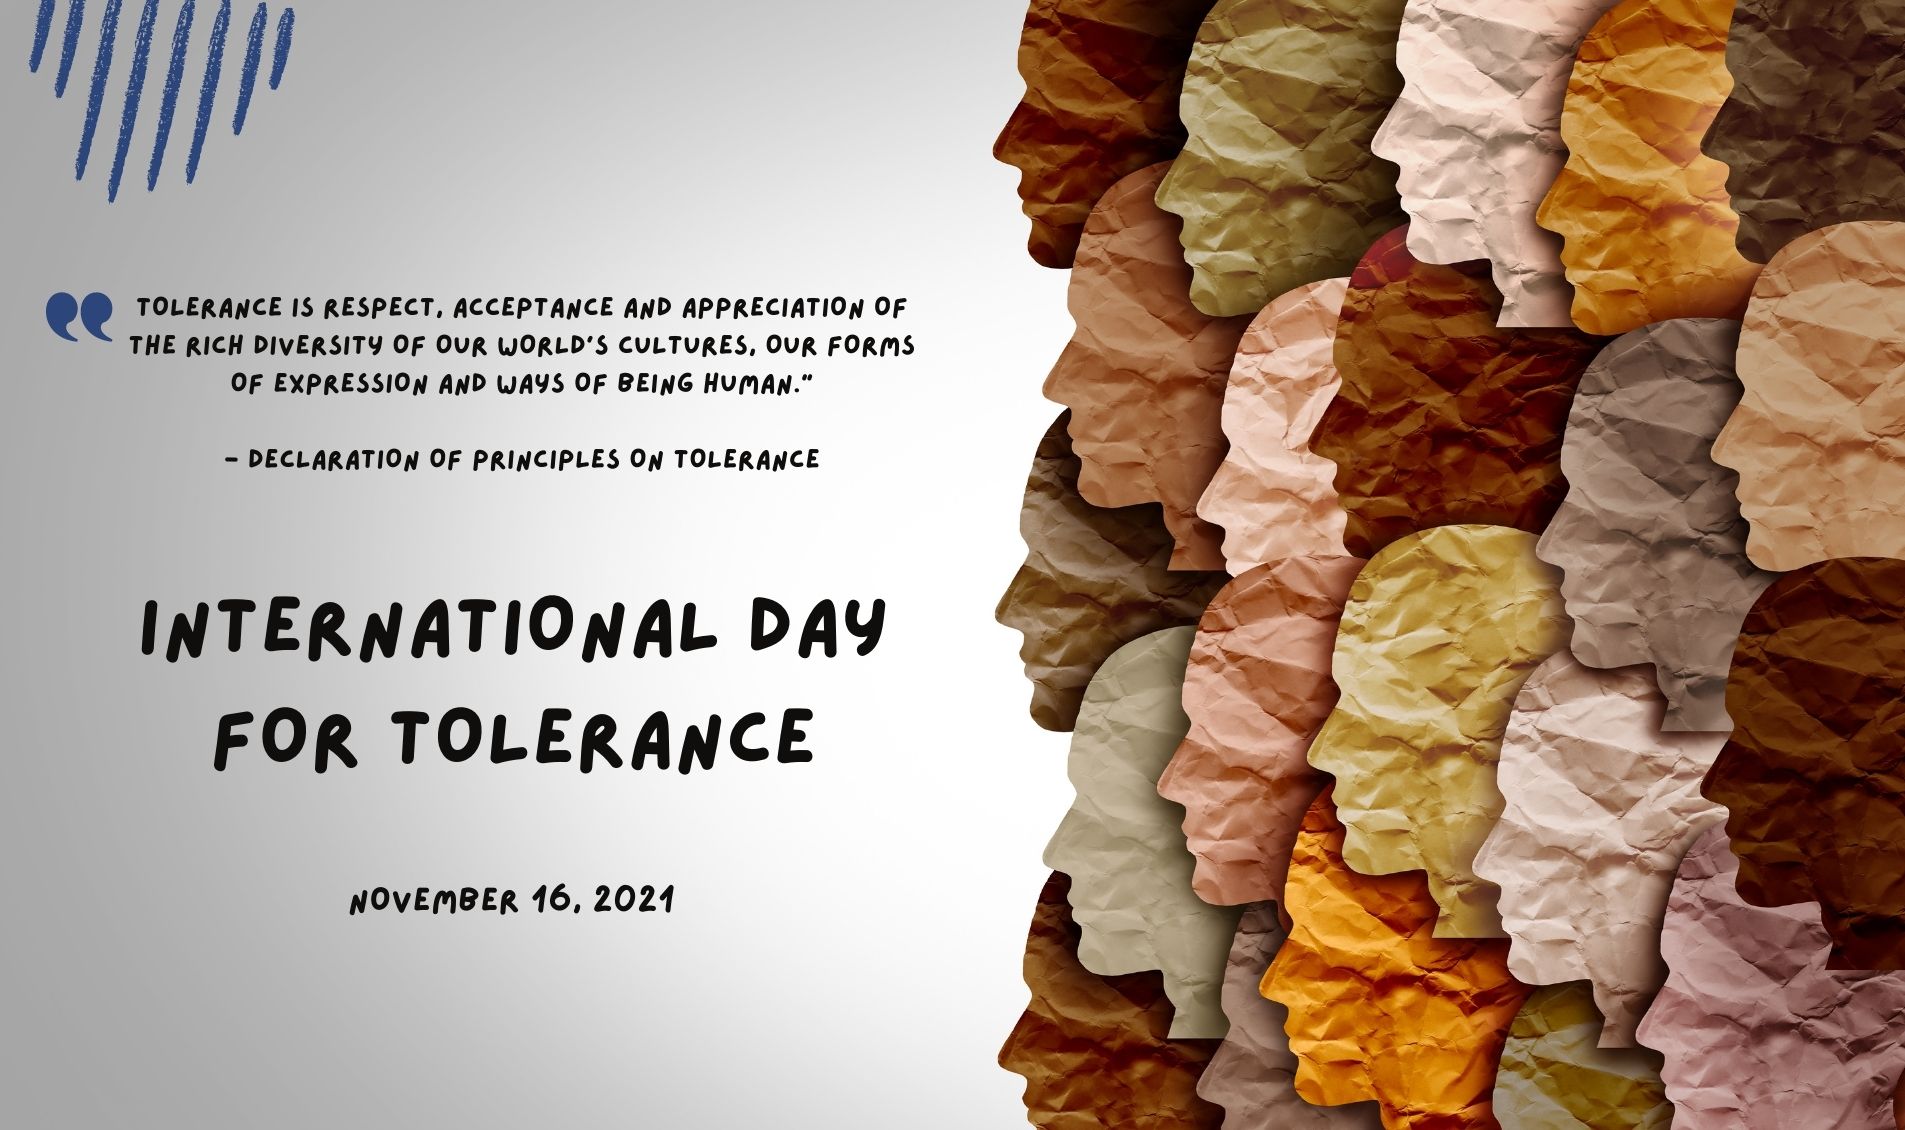 International Day for Tolerance - November 16